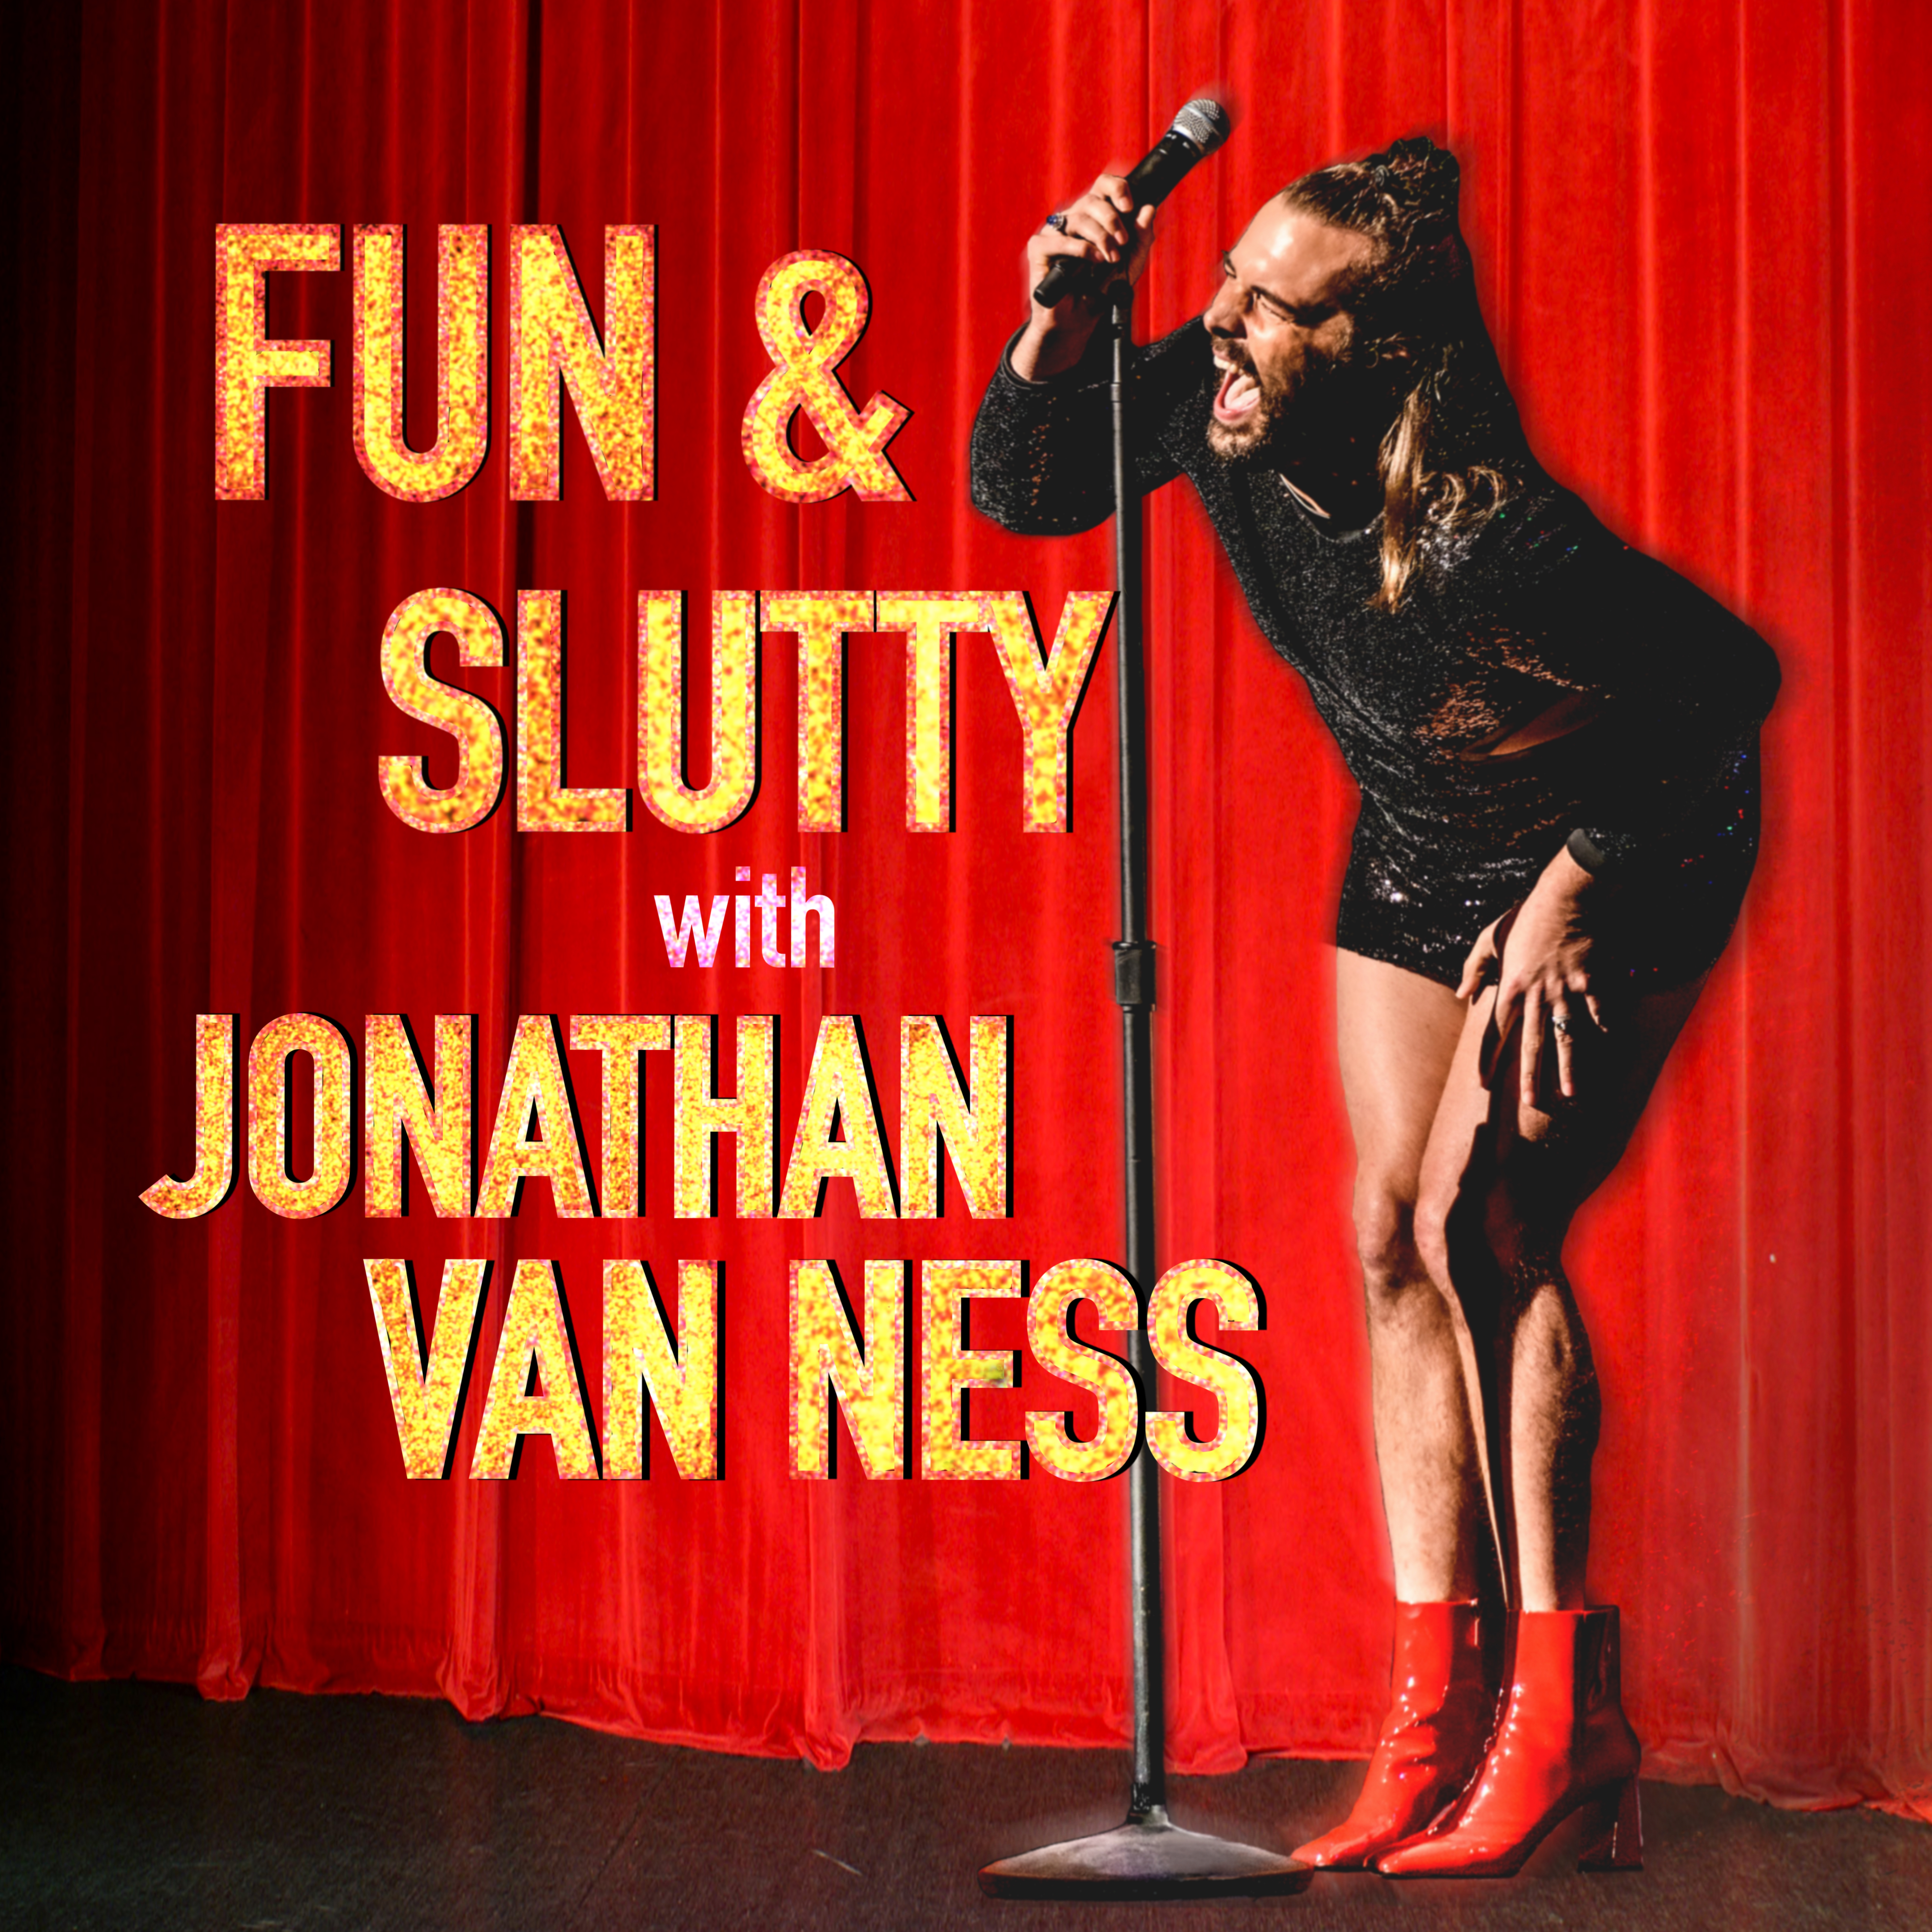 Fun & Slutty with Jonathan Van Ness